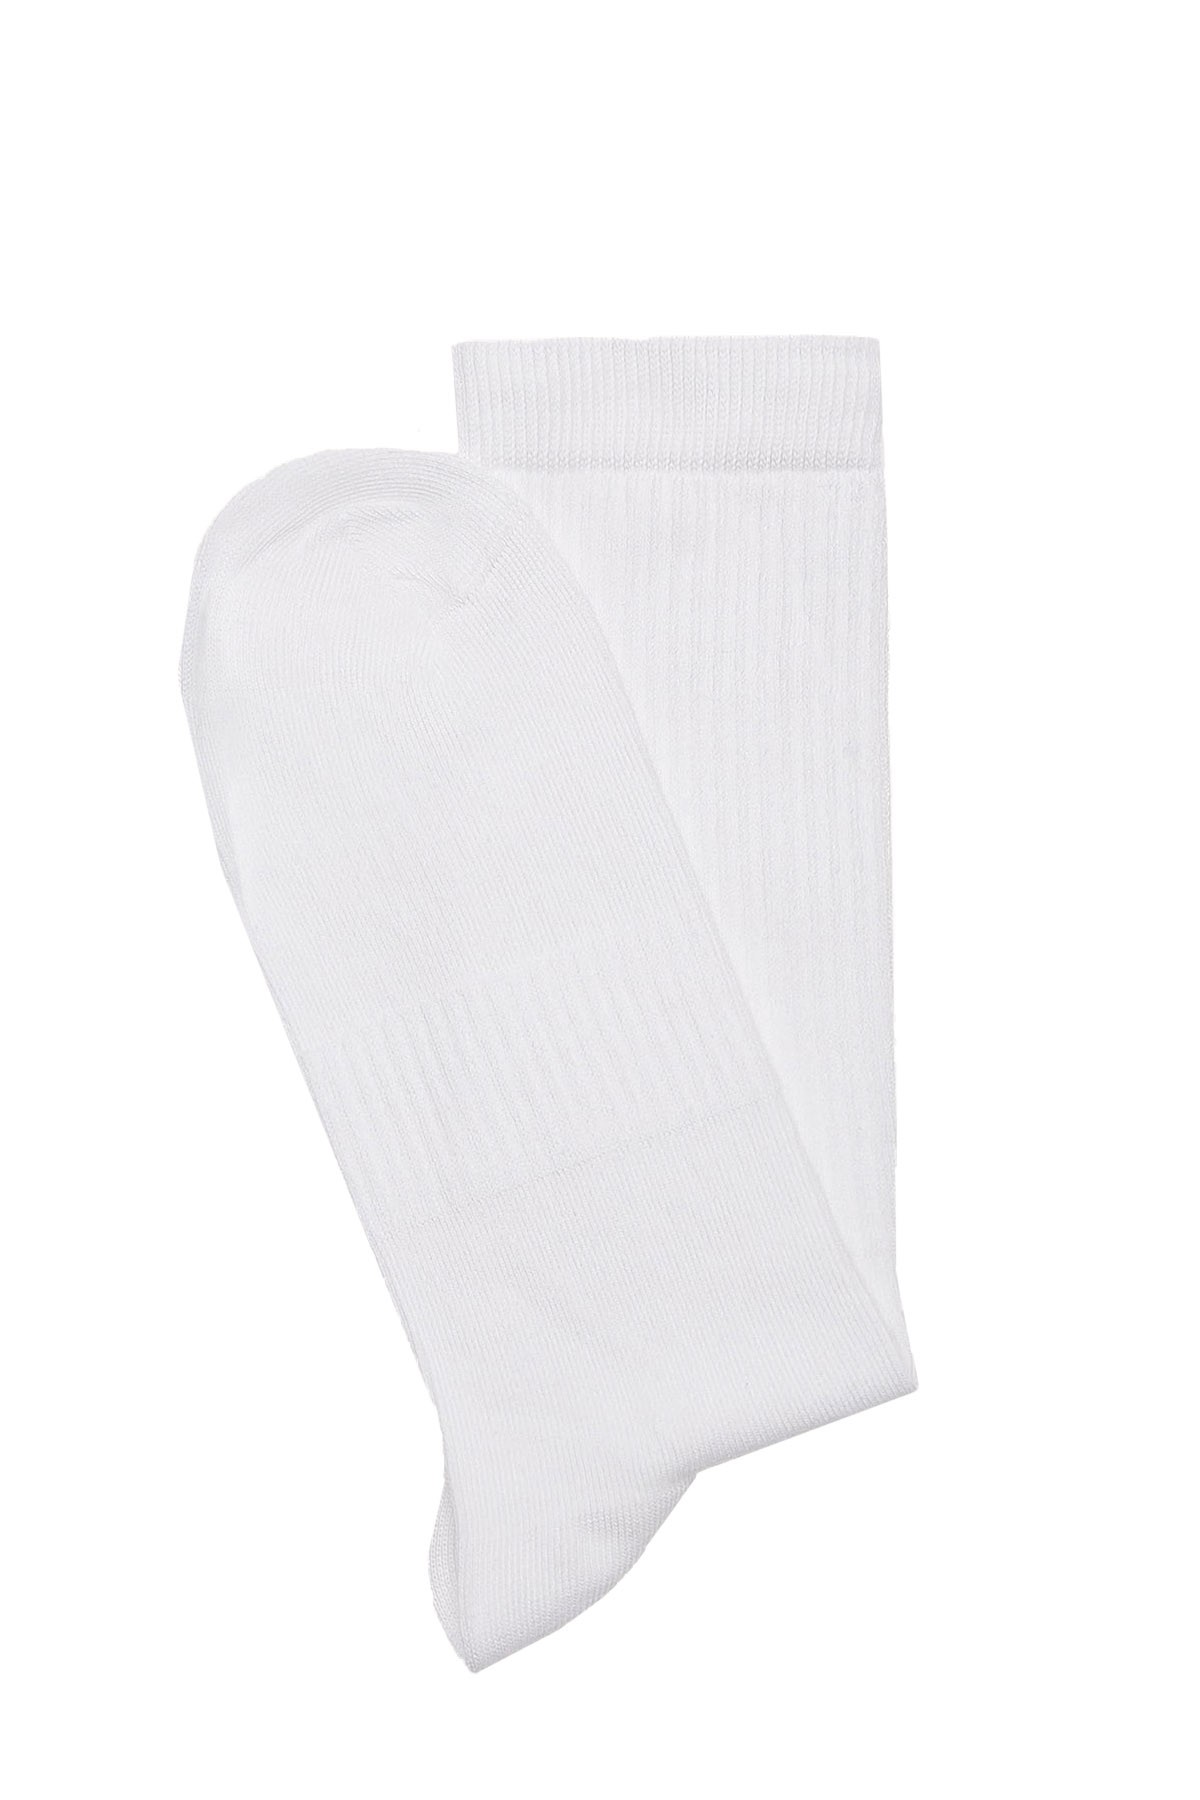 Sports Socks (36-44) - WHITE